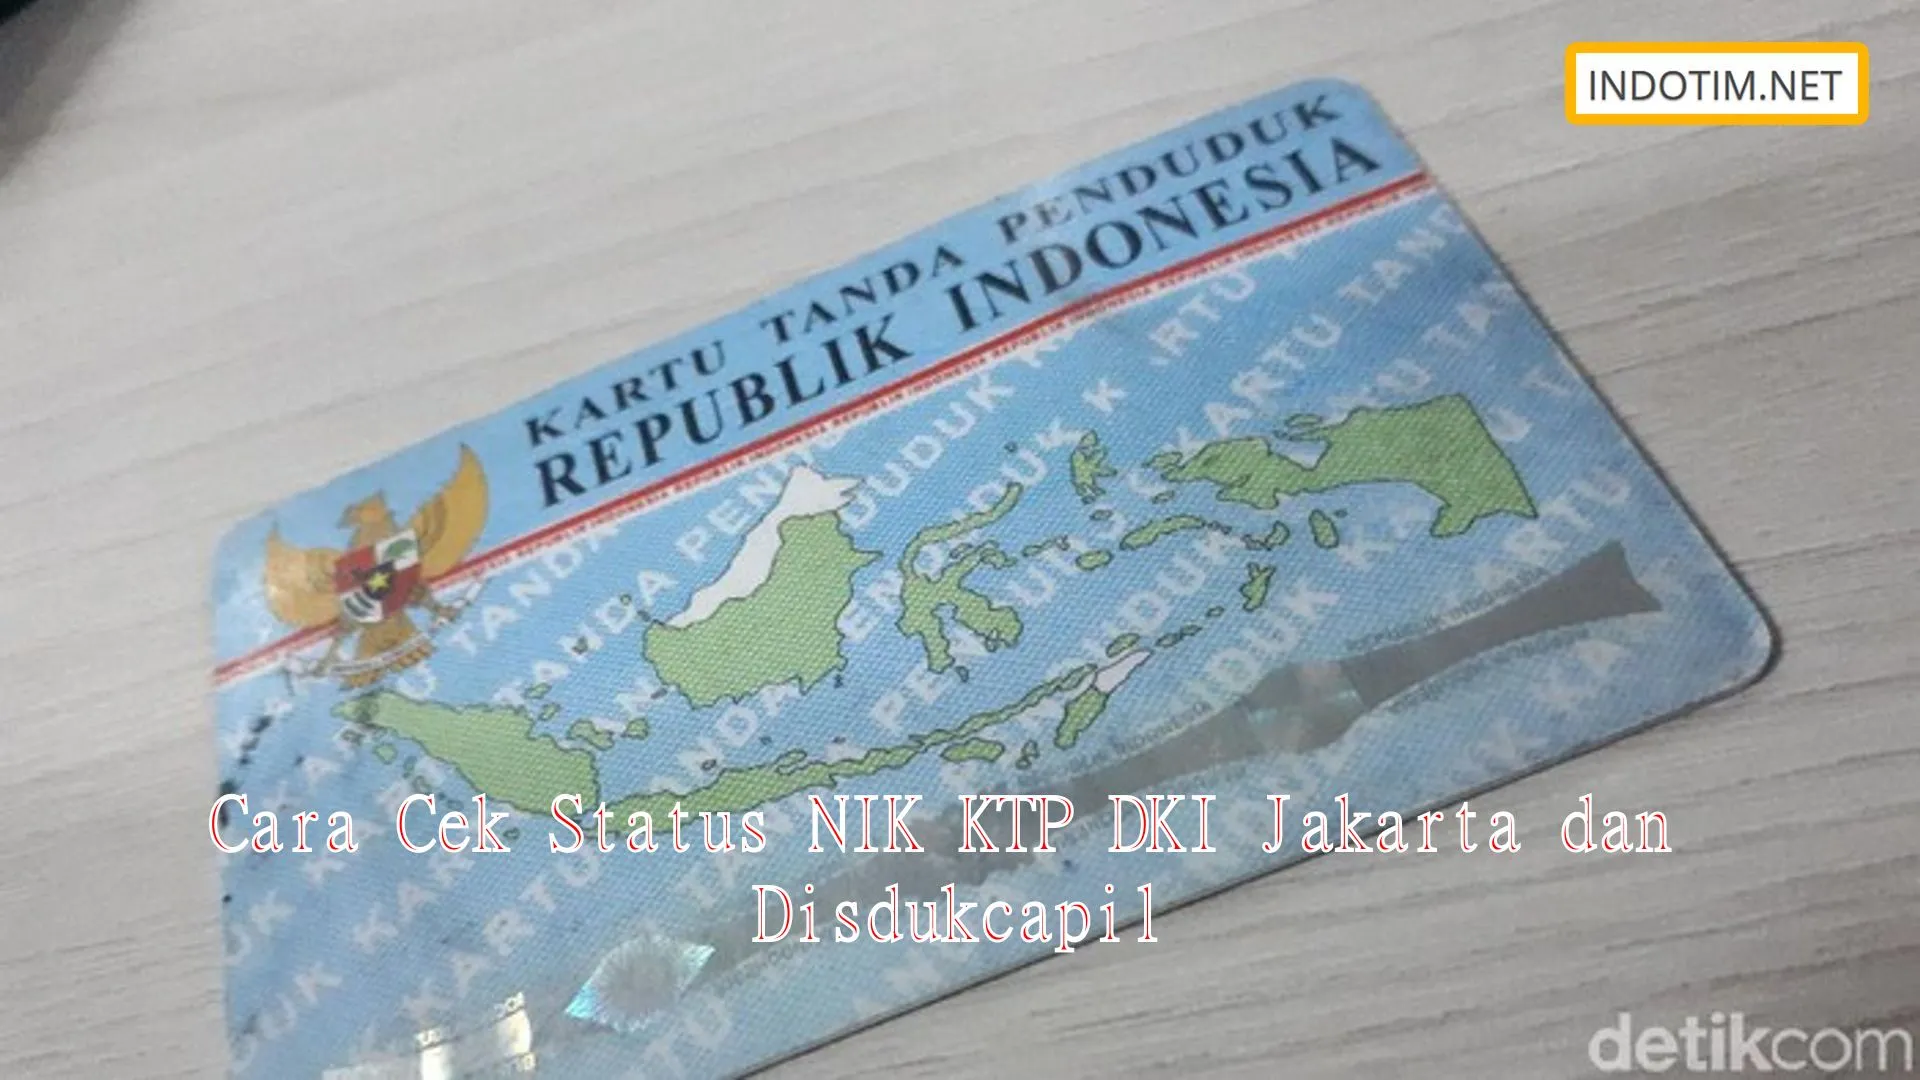 Cara Cek Status NIK KTP DKI Jakarta dan Disdukcapil